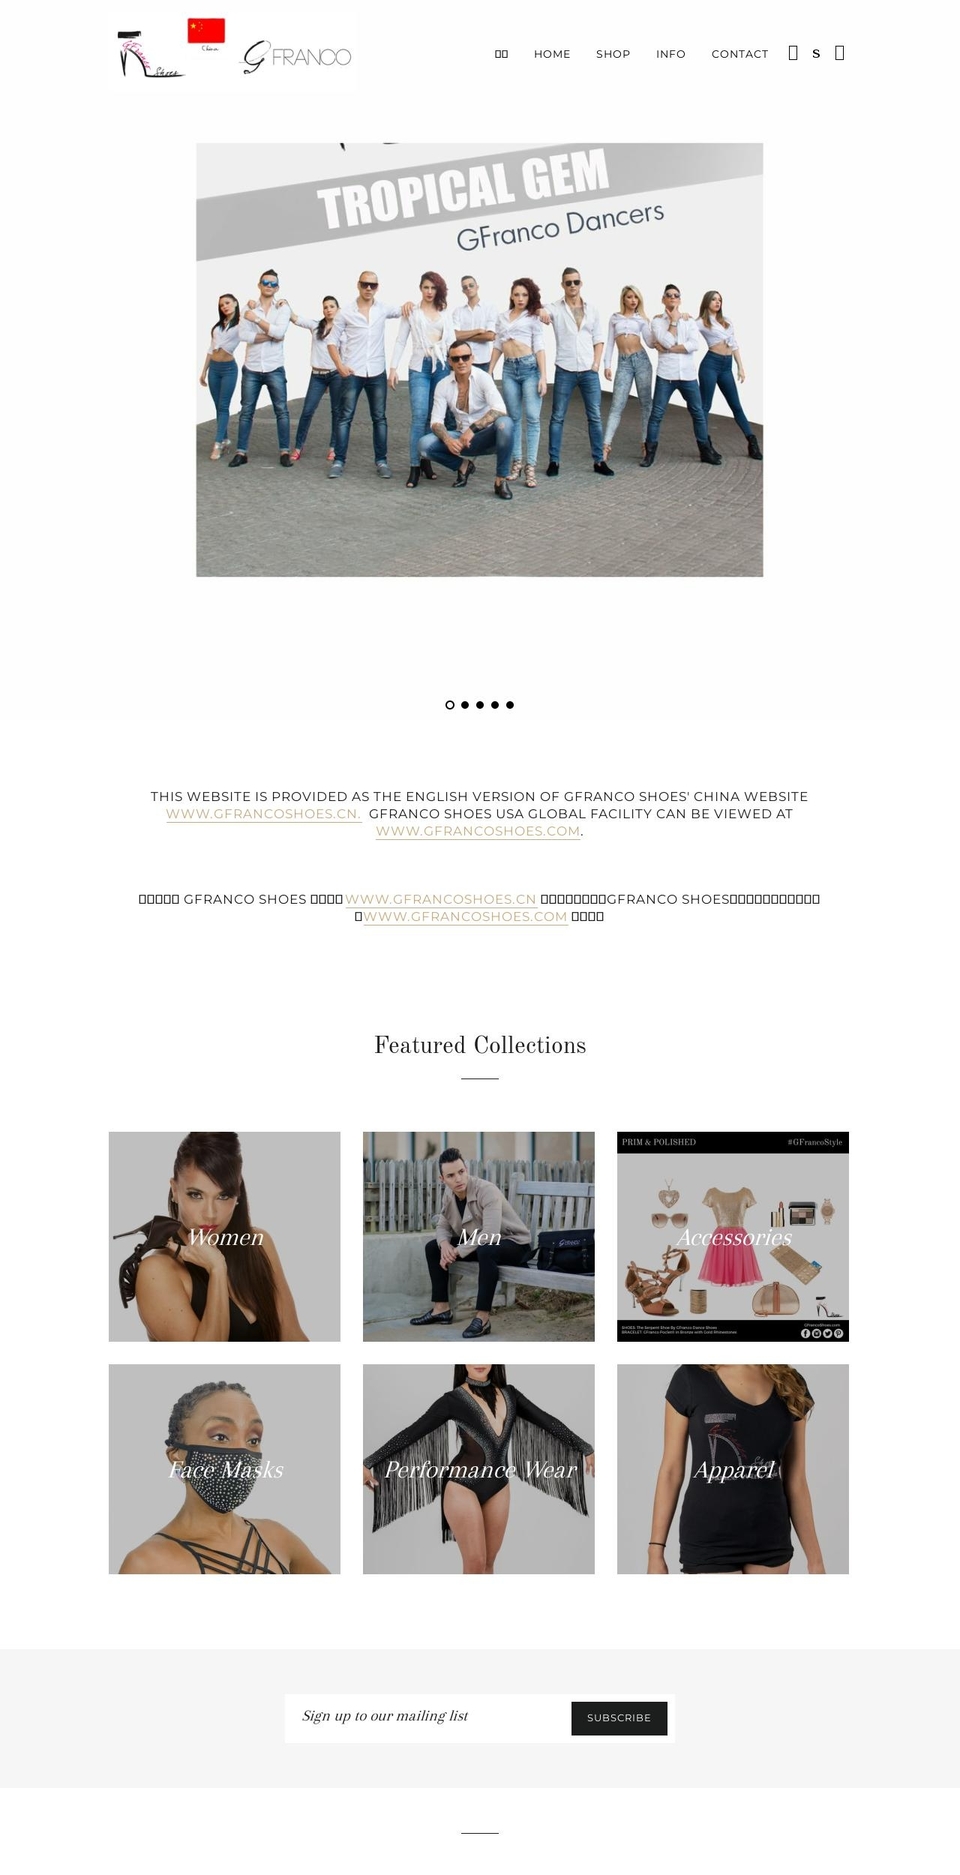 gfranco.cn shopify website screenshot